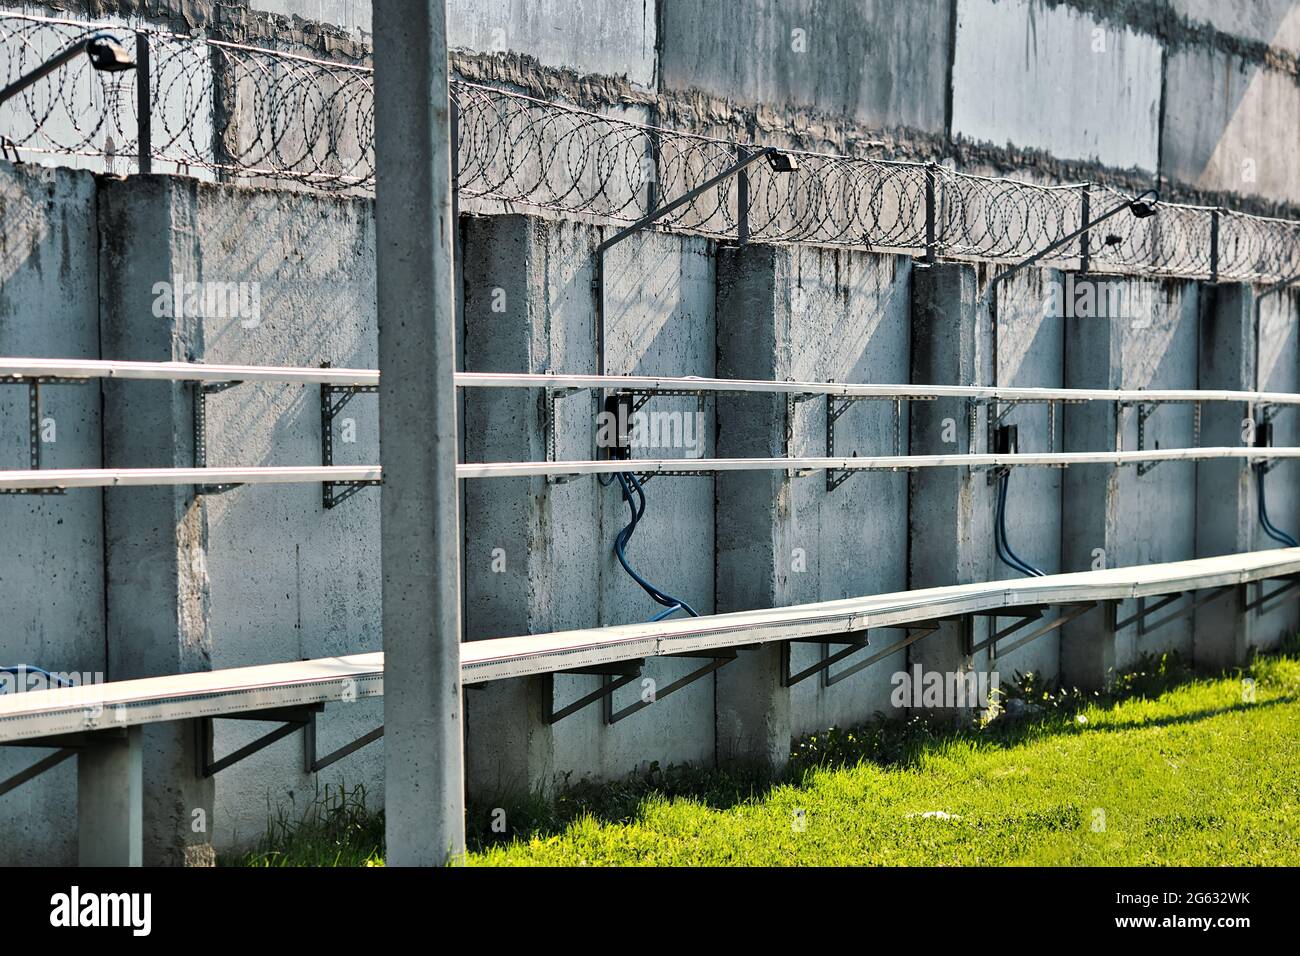 Eine Betonwand mit Stacheldraht oben. Sonderzone. Streng geschütztes Objekt. Gefängnis oder Haftort Stockfoto